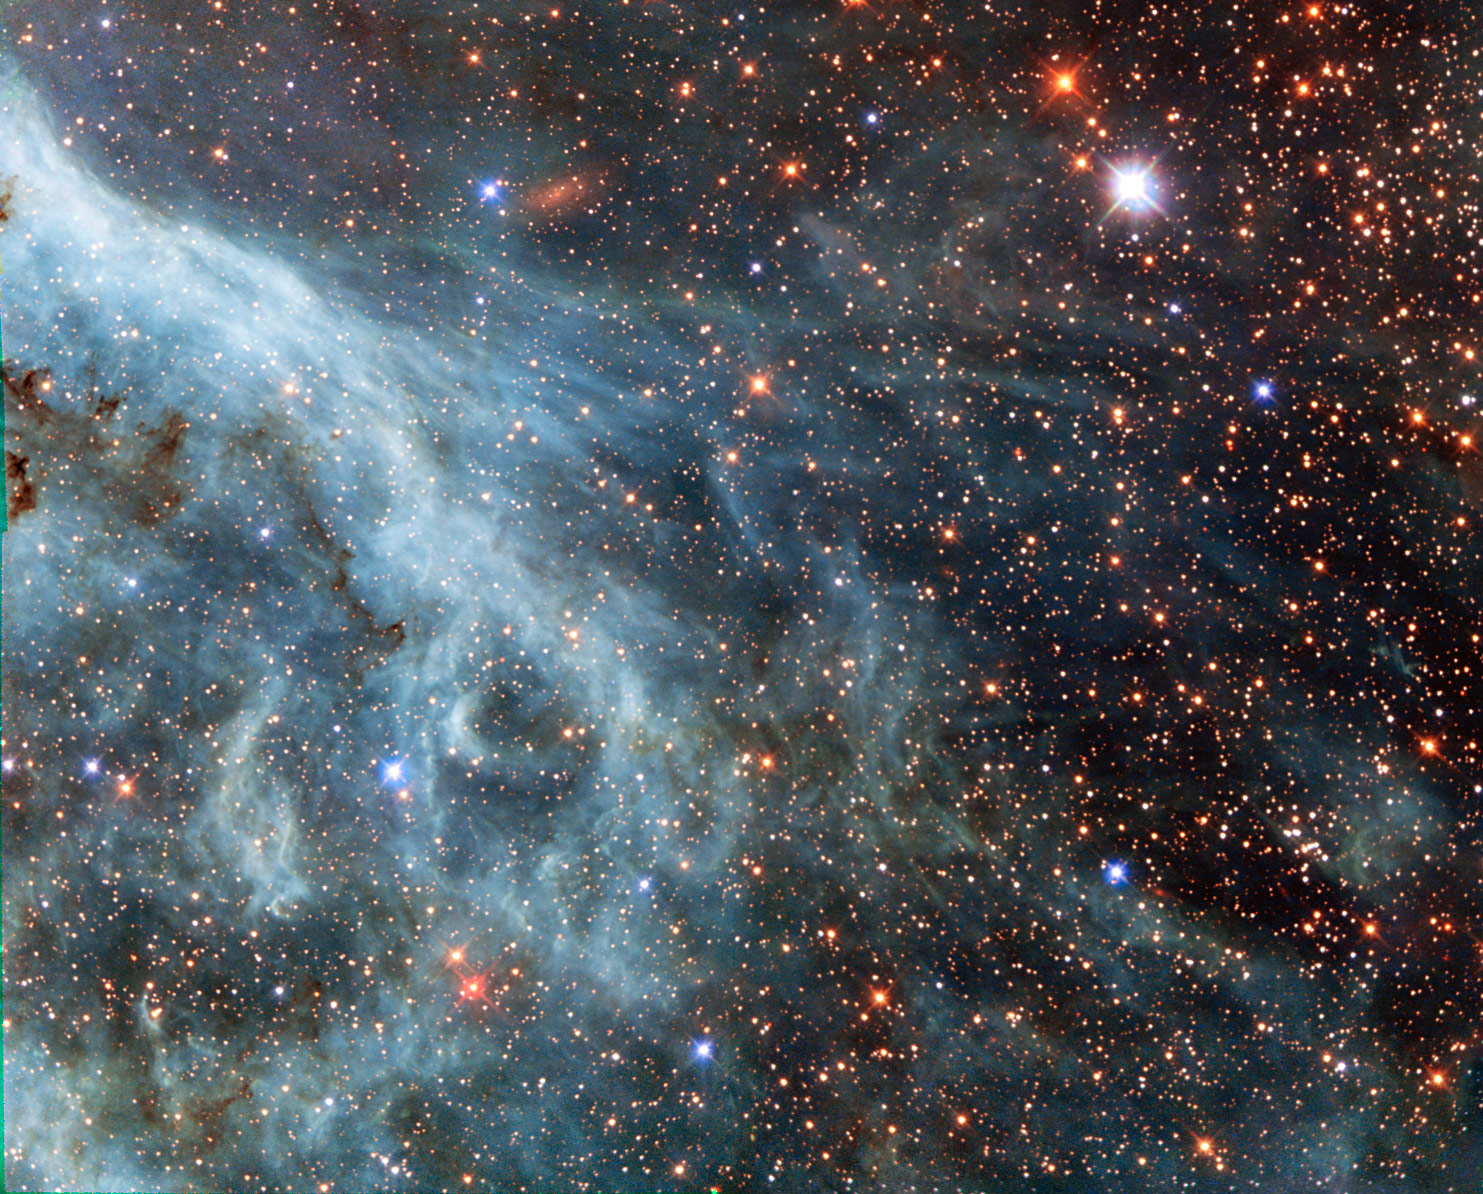 哈勃太空望远镜的图像显示了塔兰图拉星云的部分外围。这个著名的美丽星云，位于大麦哲伦云中，是哈勃经常关注的目标。资料来源：ESA/Hubble & NAS